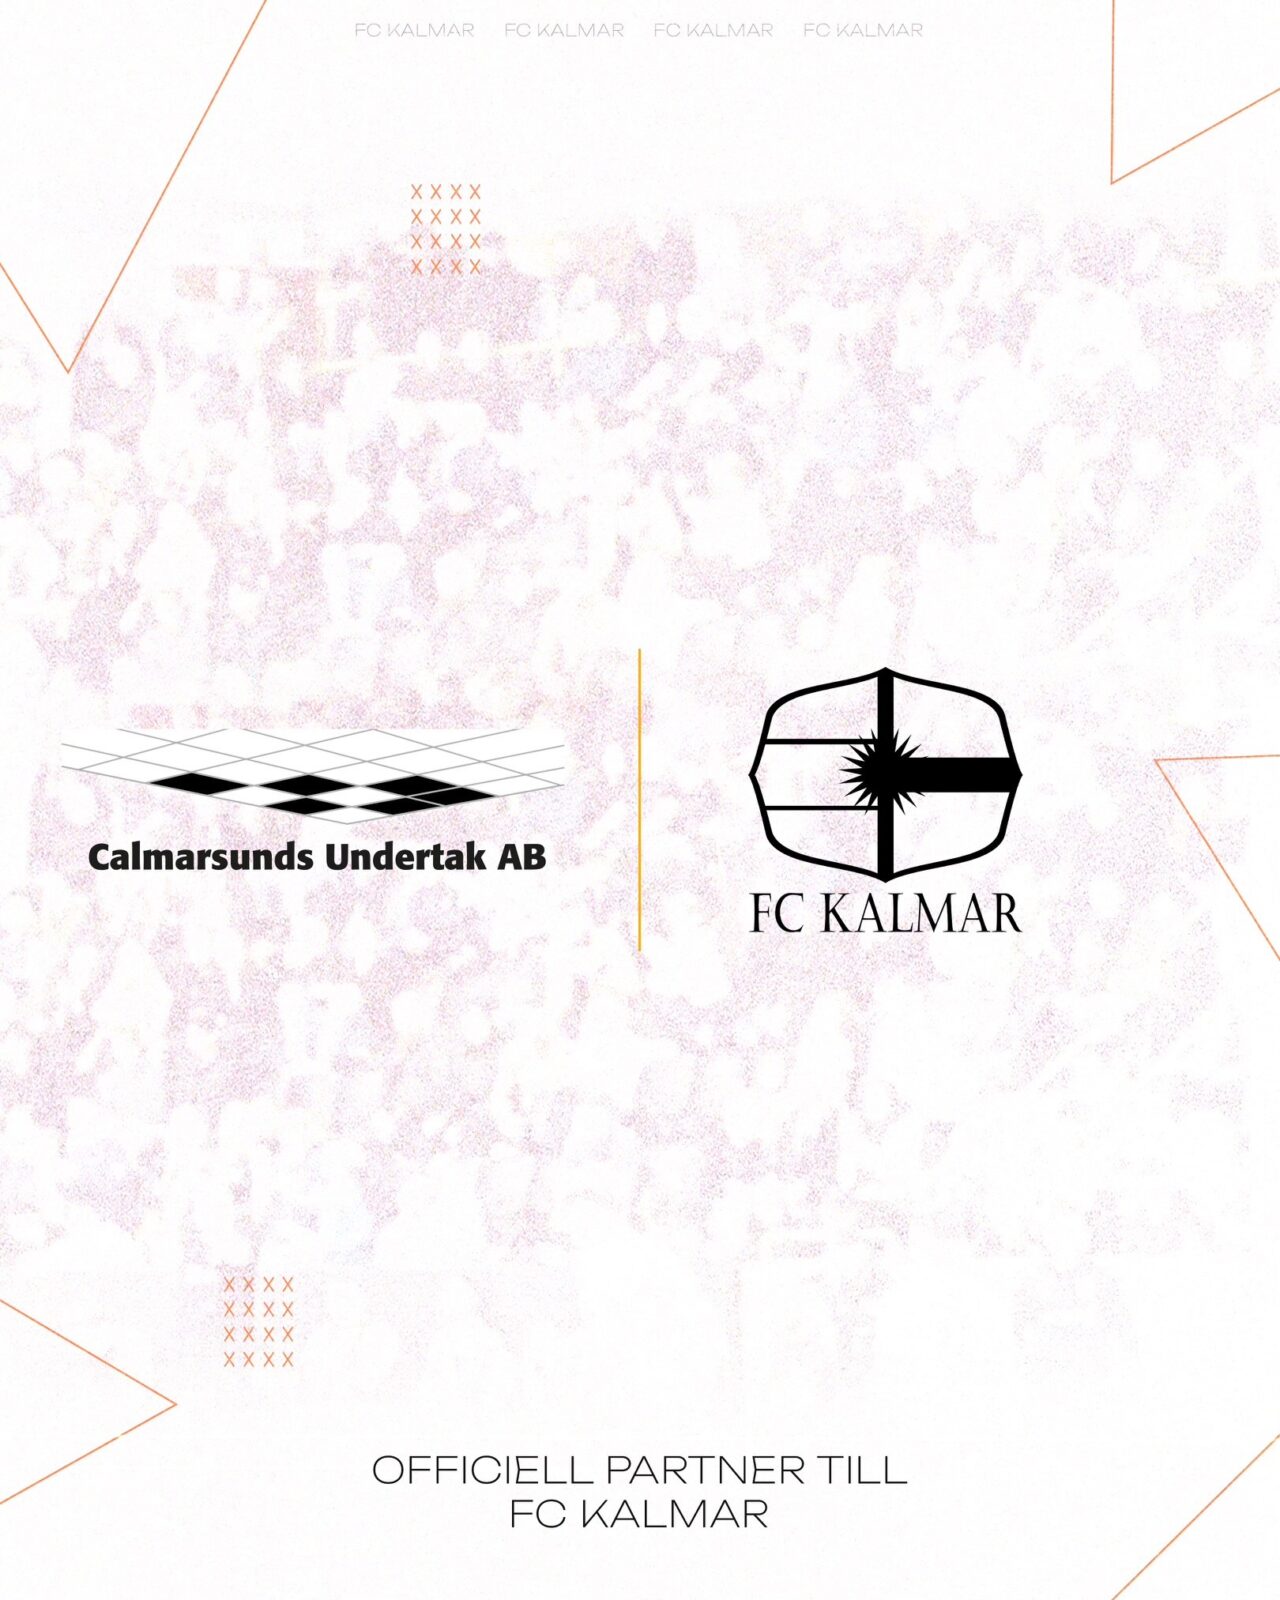 Calmarsunds Undertak AB blir ny officiell partner till FC Kalmar!